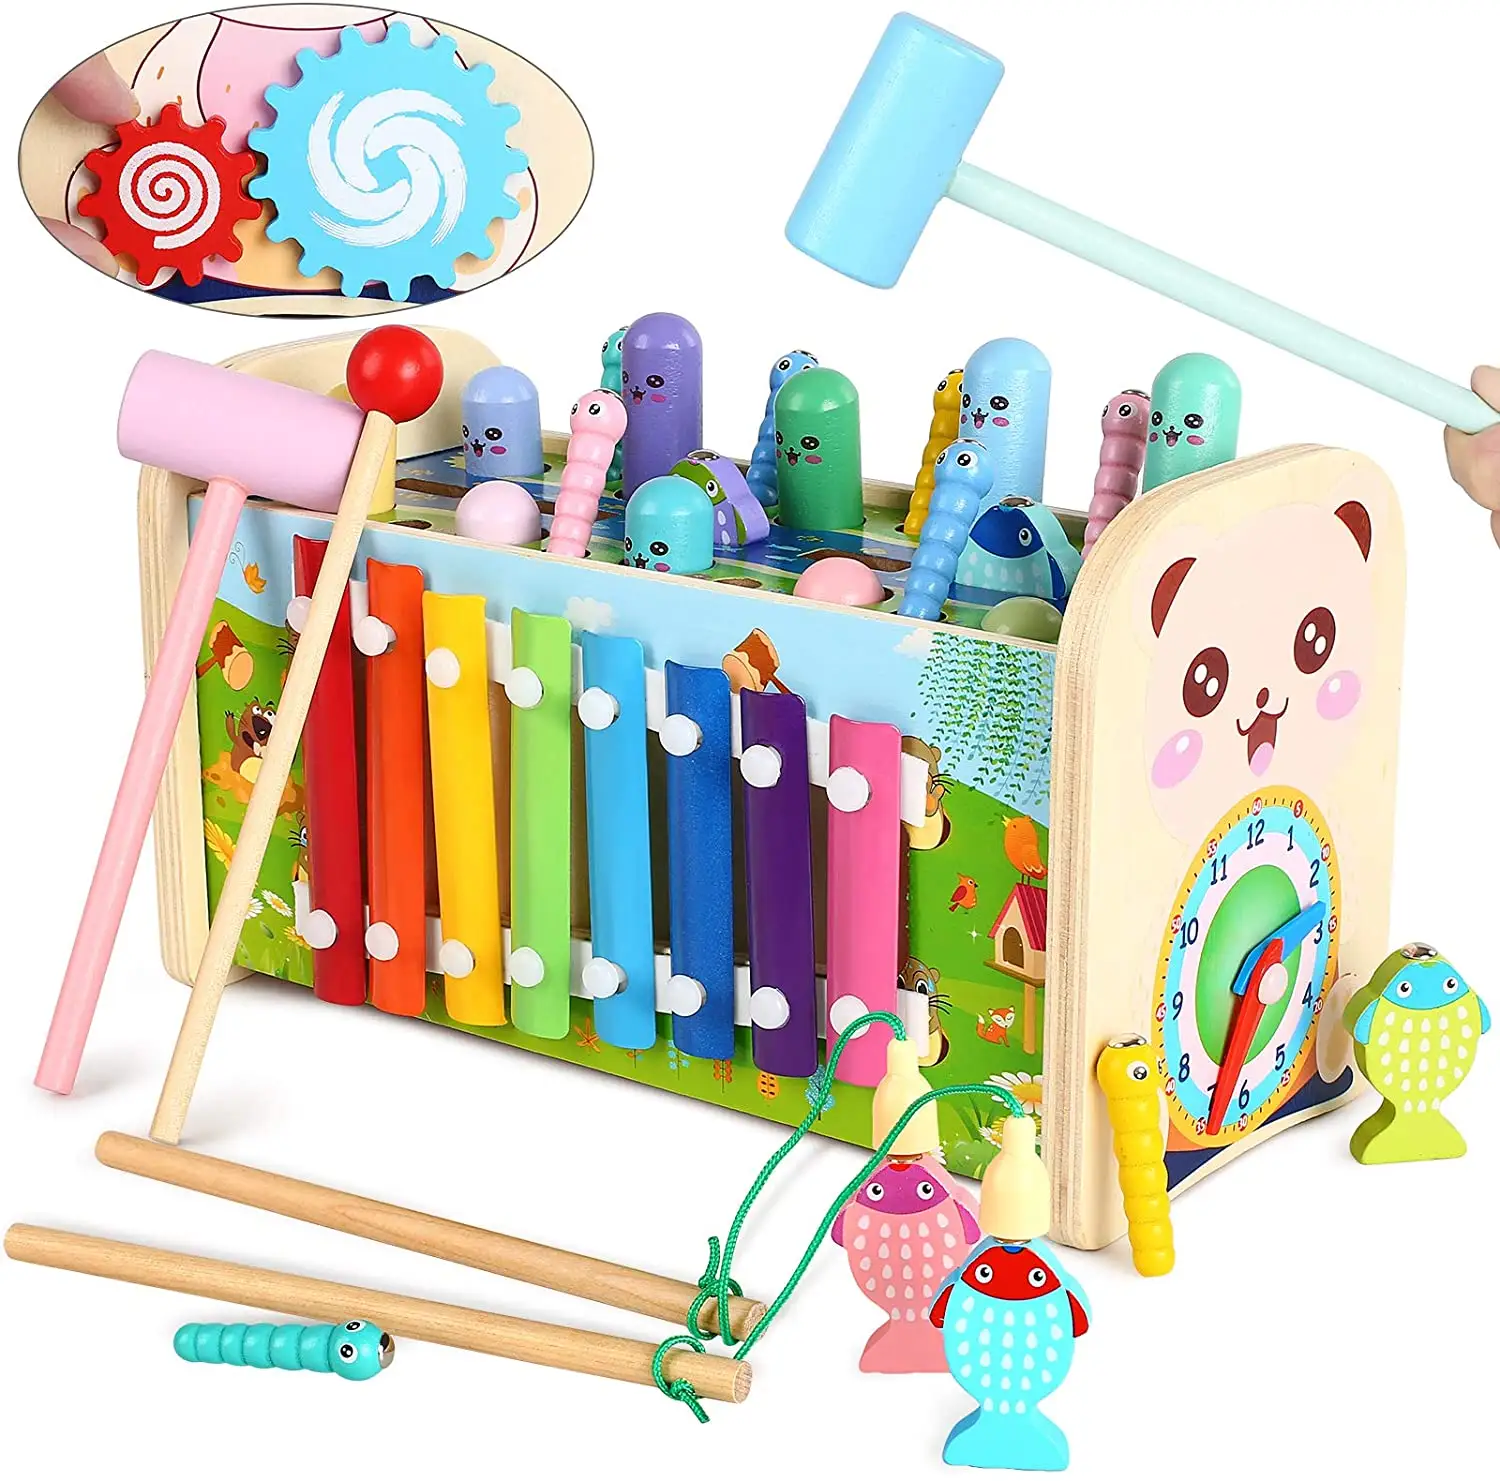 モンテッソーリ初期教育モータースキル子供音楽ギフトおもちゃ木製楽器木琴おもちゃ幼児用ゲーム付き